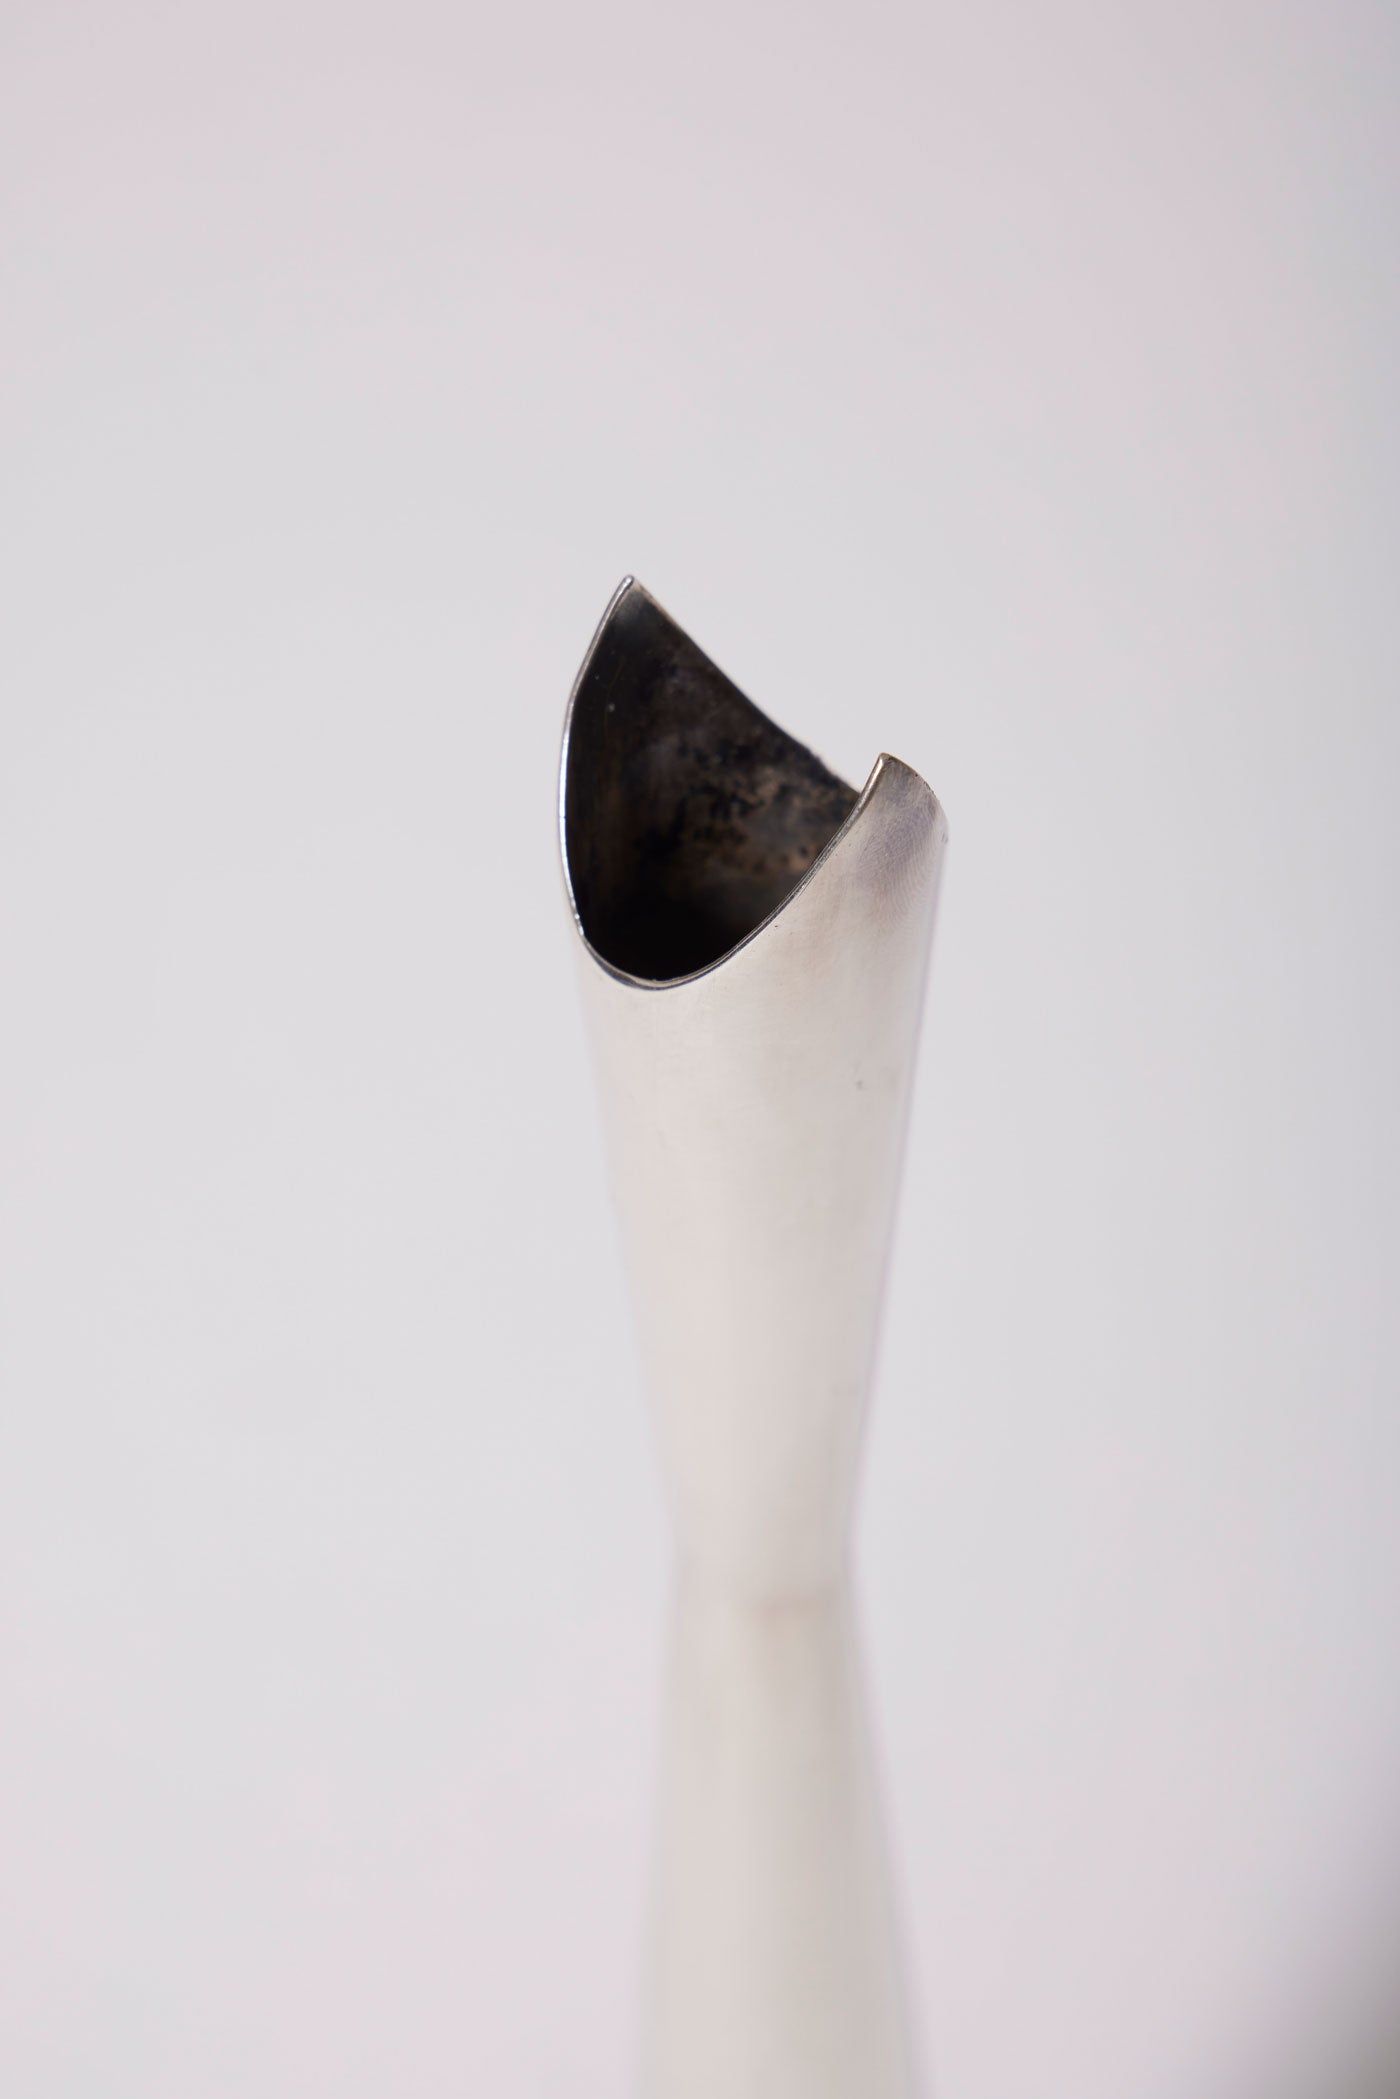 Vase ou soliflore en métal argenté du designer Lino Sabbatini (1925-2016), modèle cardinal créé en 1957, édité par la Maison Christofle. Modèle iconique du design des années 1960. Très bon état, infimes usures d'usage.